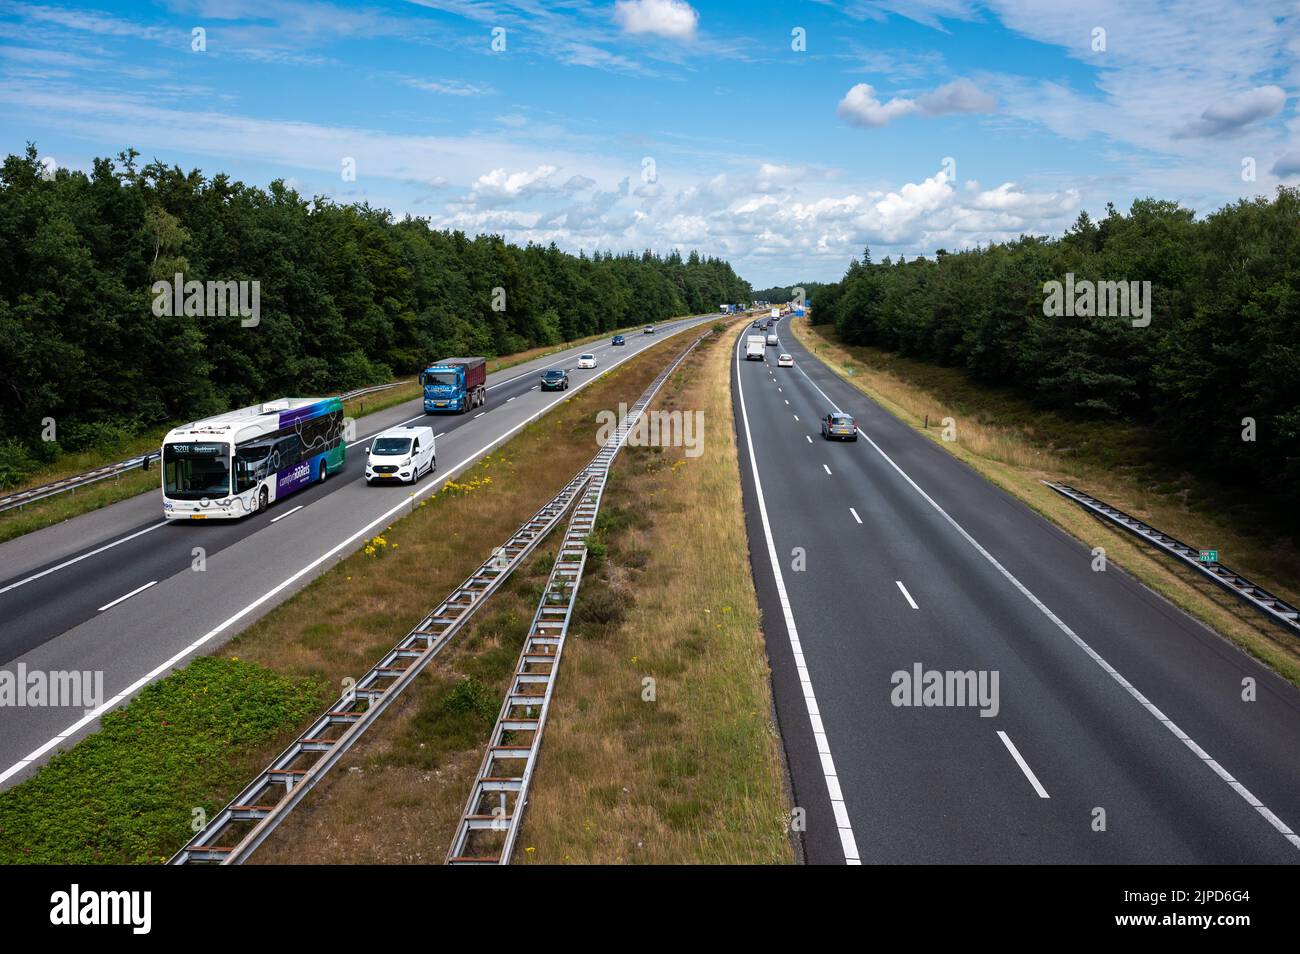 Hattem, Gelderland, The Netherlands, 07 14 2022 - Traffic over the asphalt of the A50 highway Stock Photo